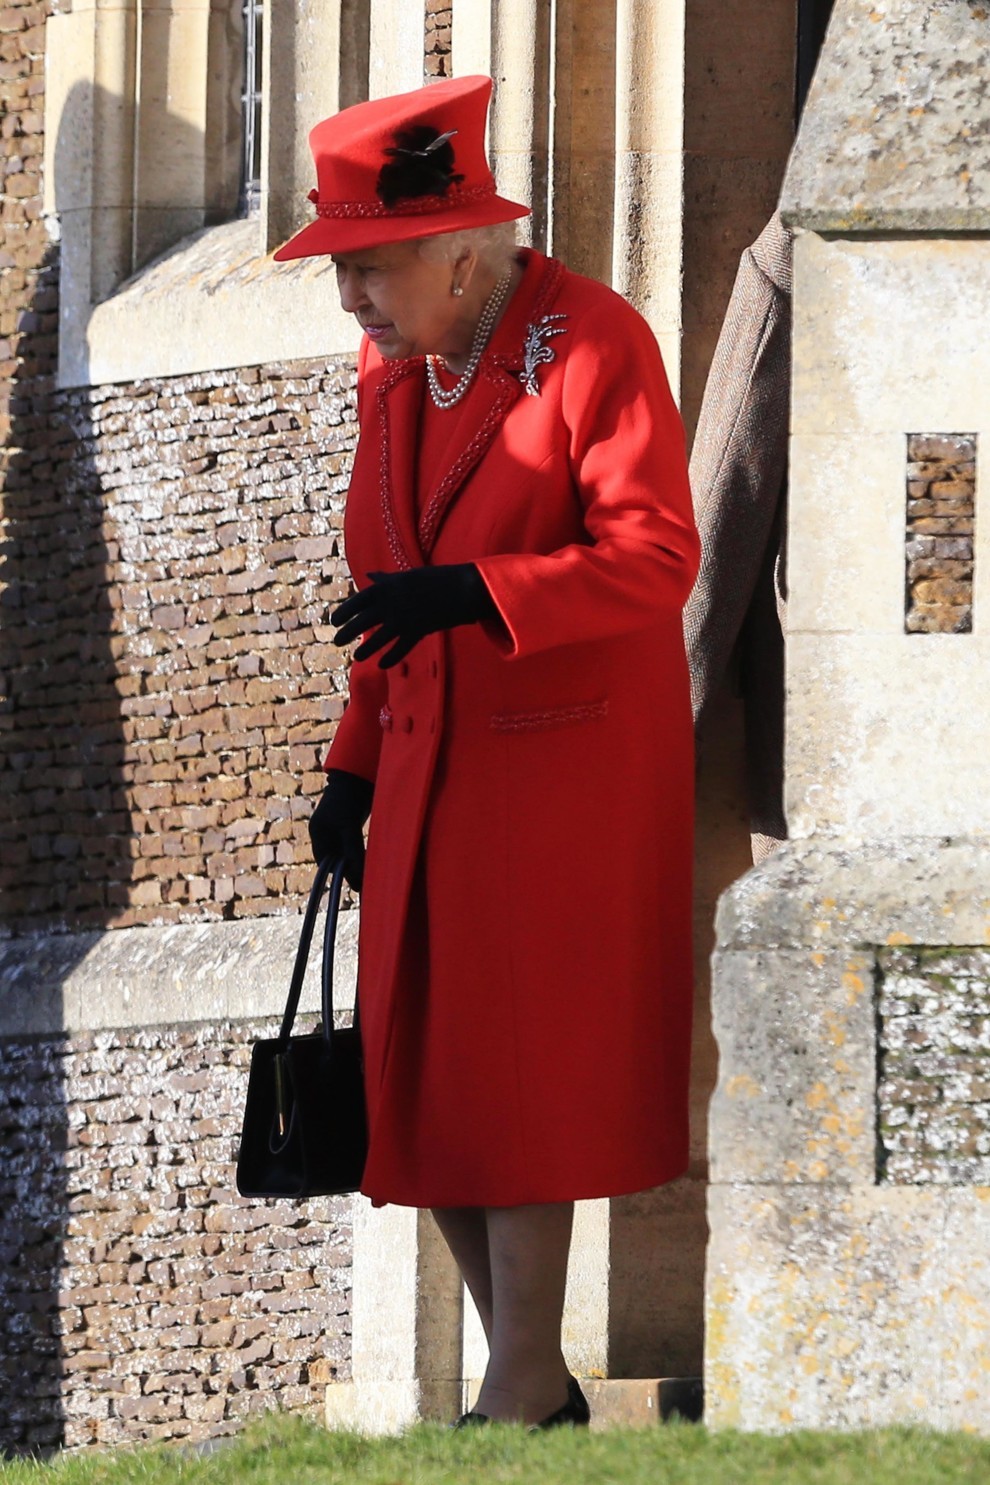 Кейт Миддлтон, принц Уильям с детьми, королева Елизавета II, принц Эндрю в церкви Святой Марии Магдалины на рождественской службе (ФОТО)